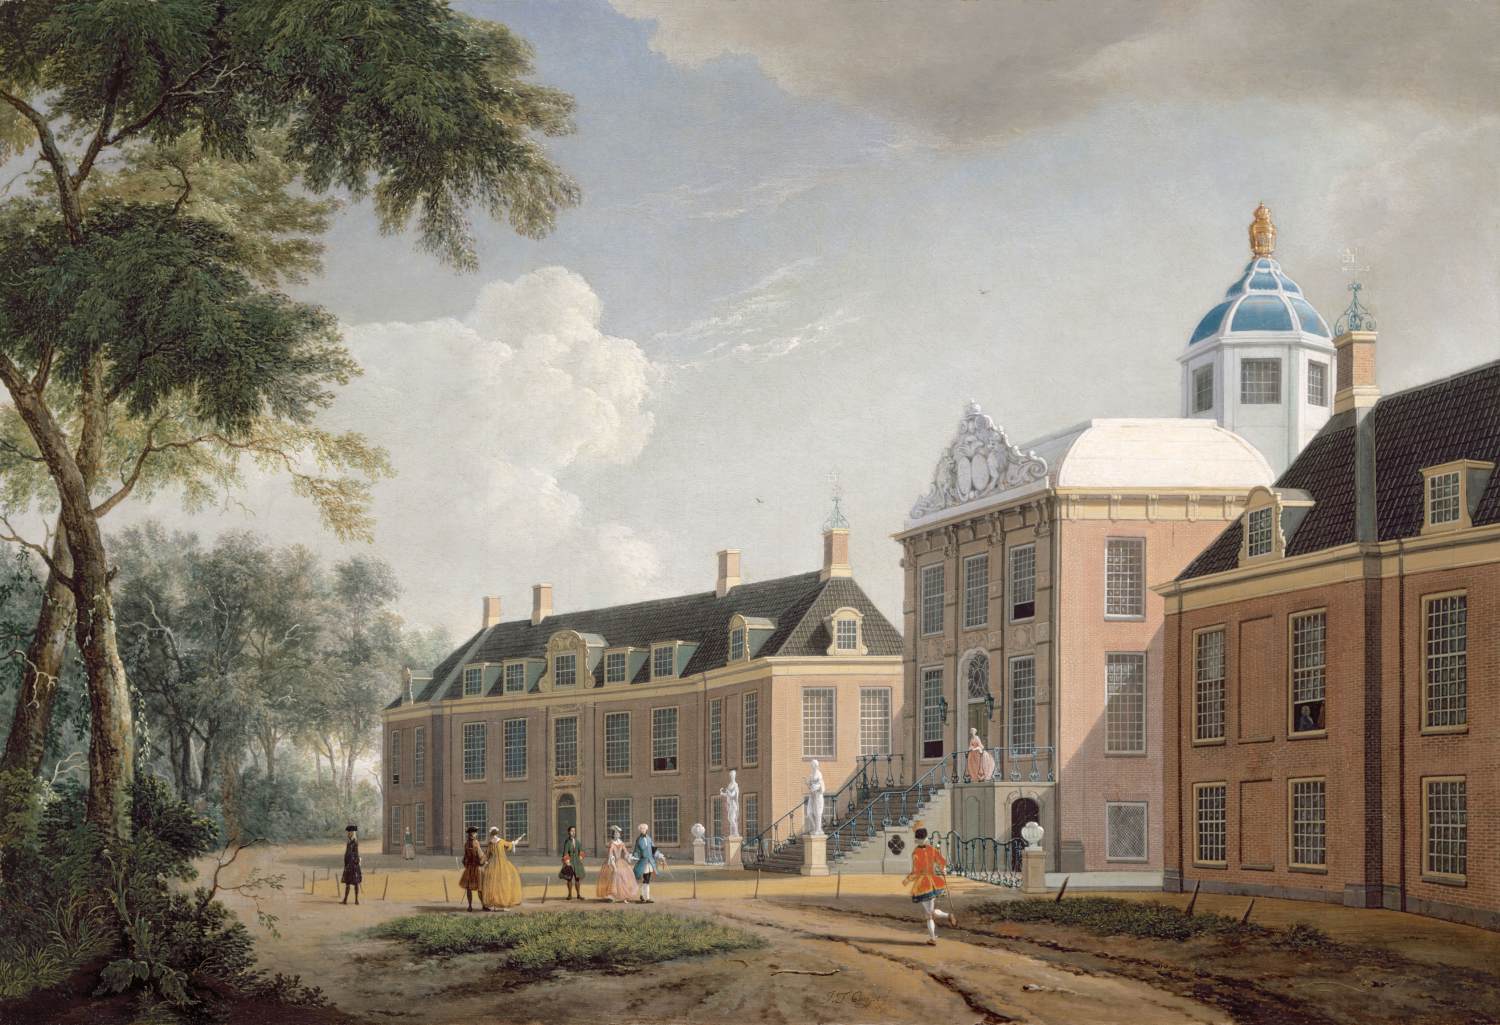 Vista de Huis Ten Bosch Palace